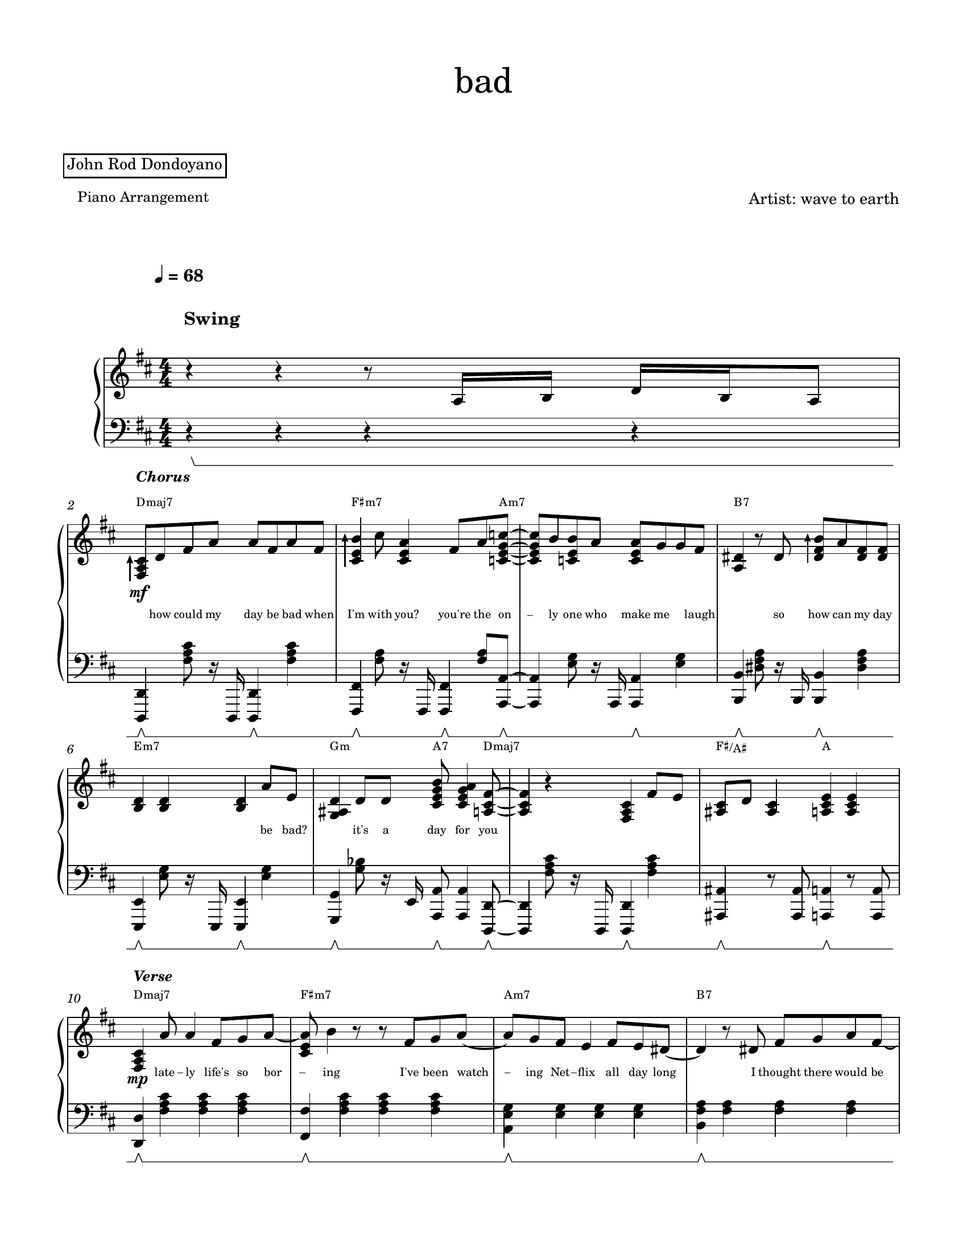 wave to earth - bad (PIANO SHEET) by John Rod Dondoyano